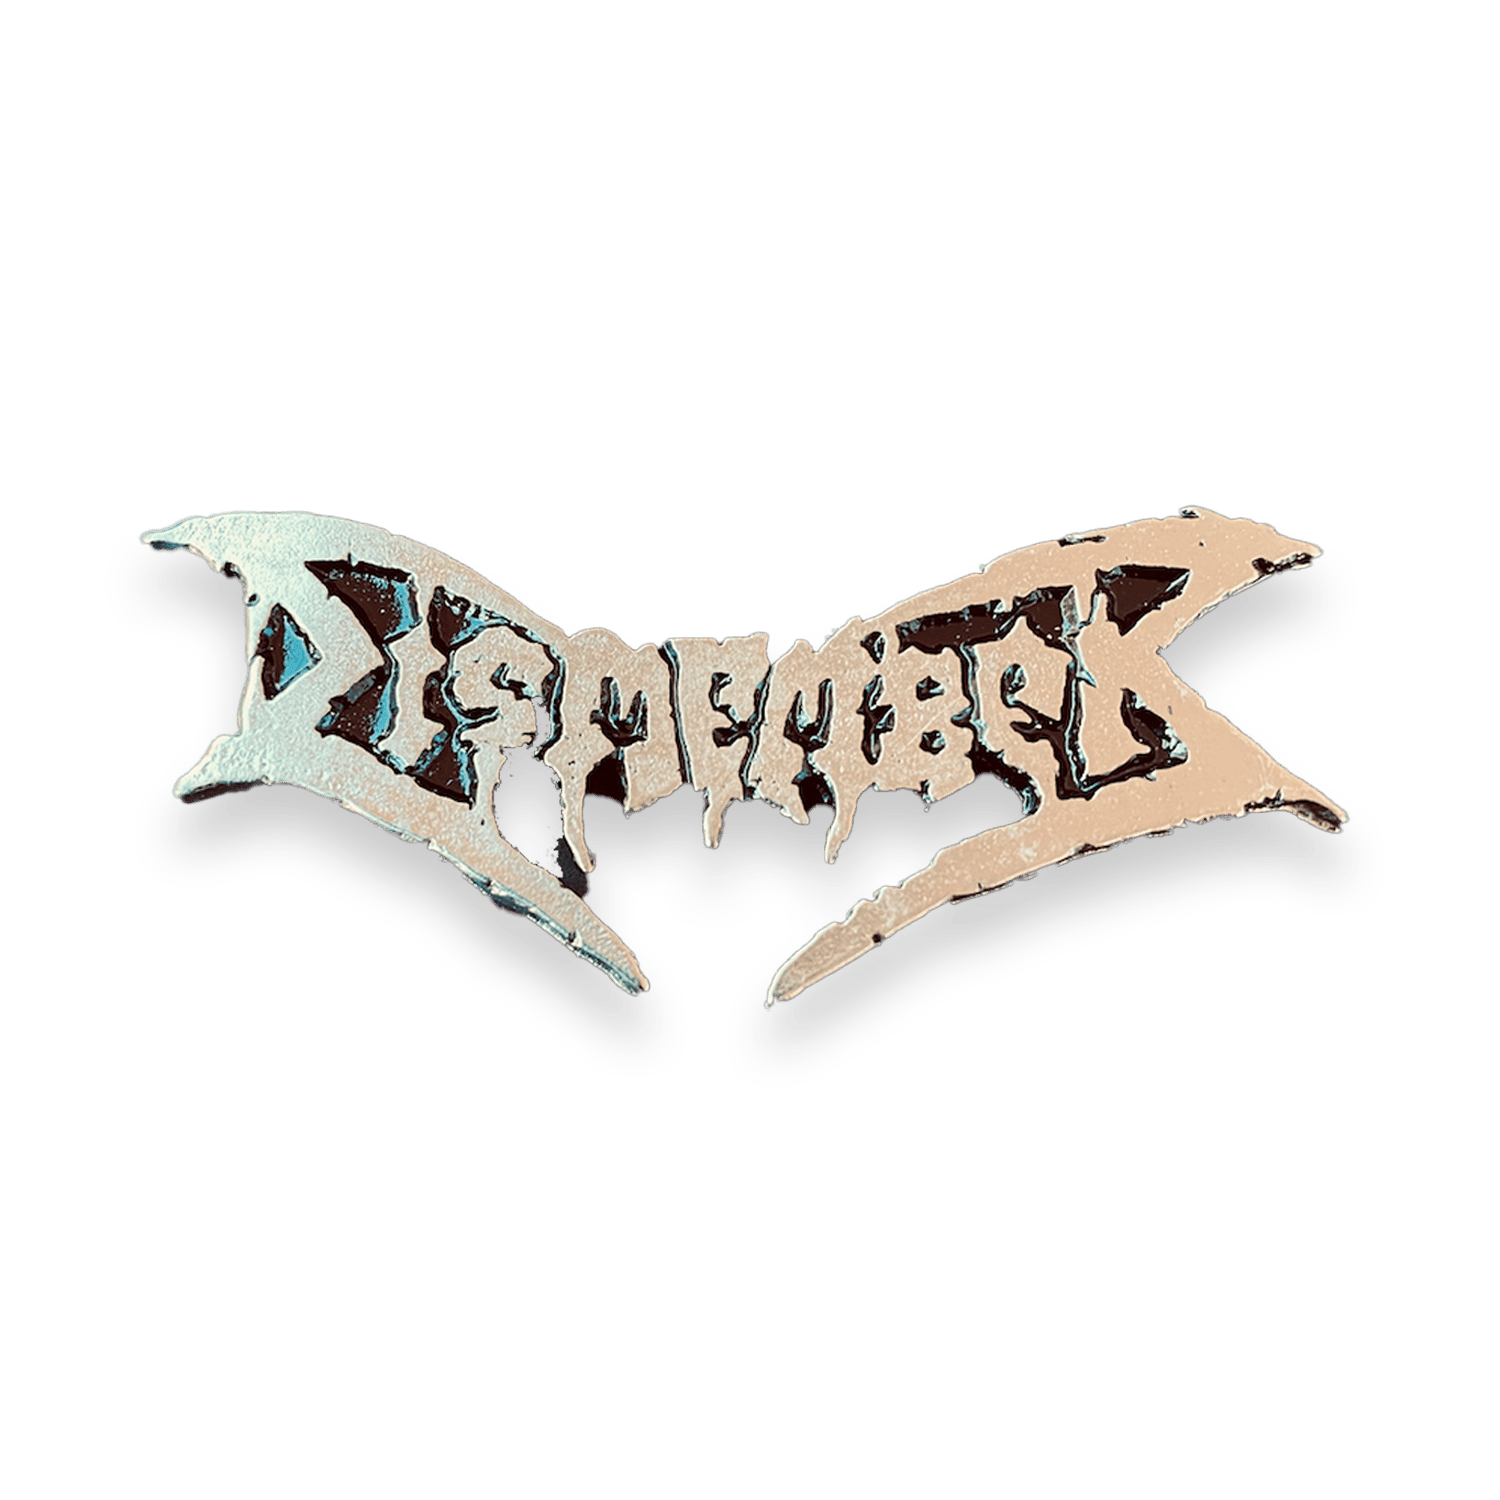 Dismember - Logo